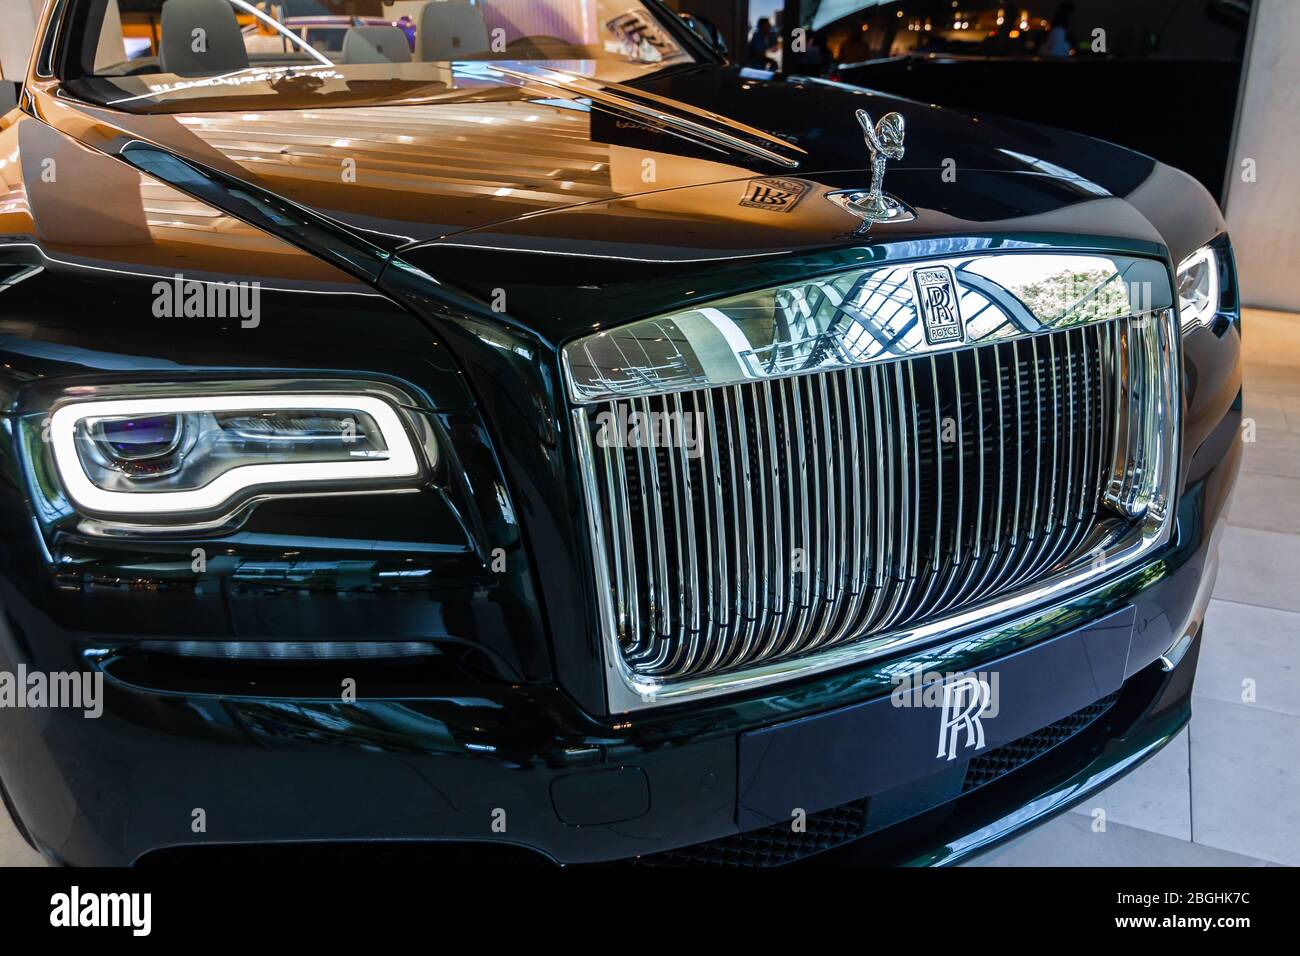 Rolls Royce Phantom.BMW Welt, München, Deutschland, März 2020  Stockfotografie - Alamy